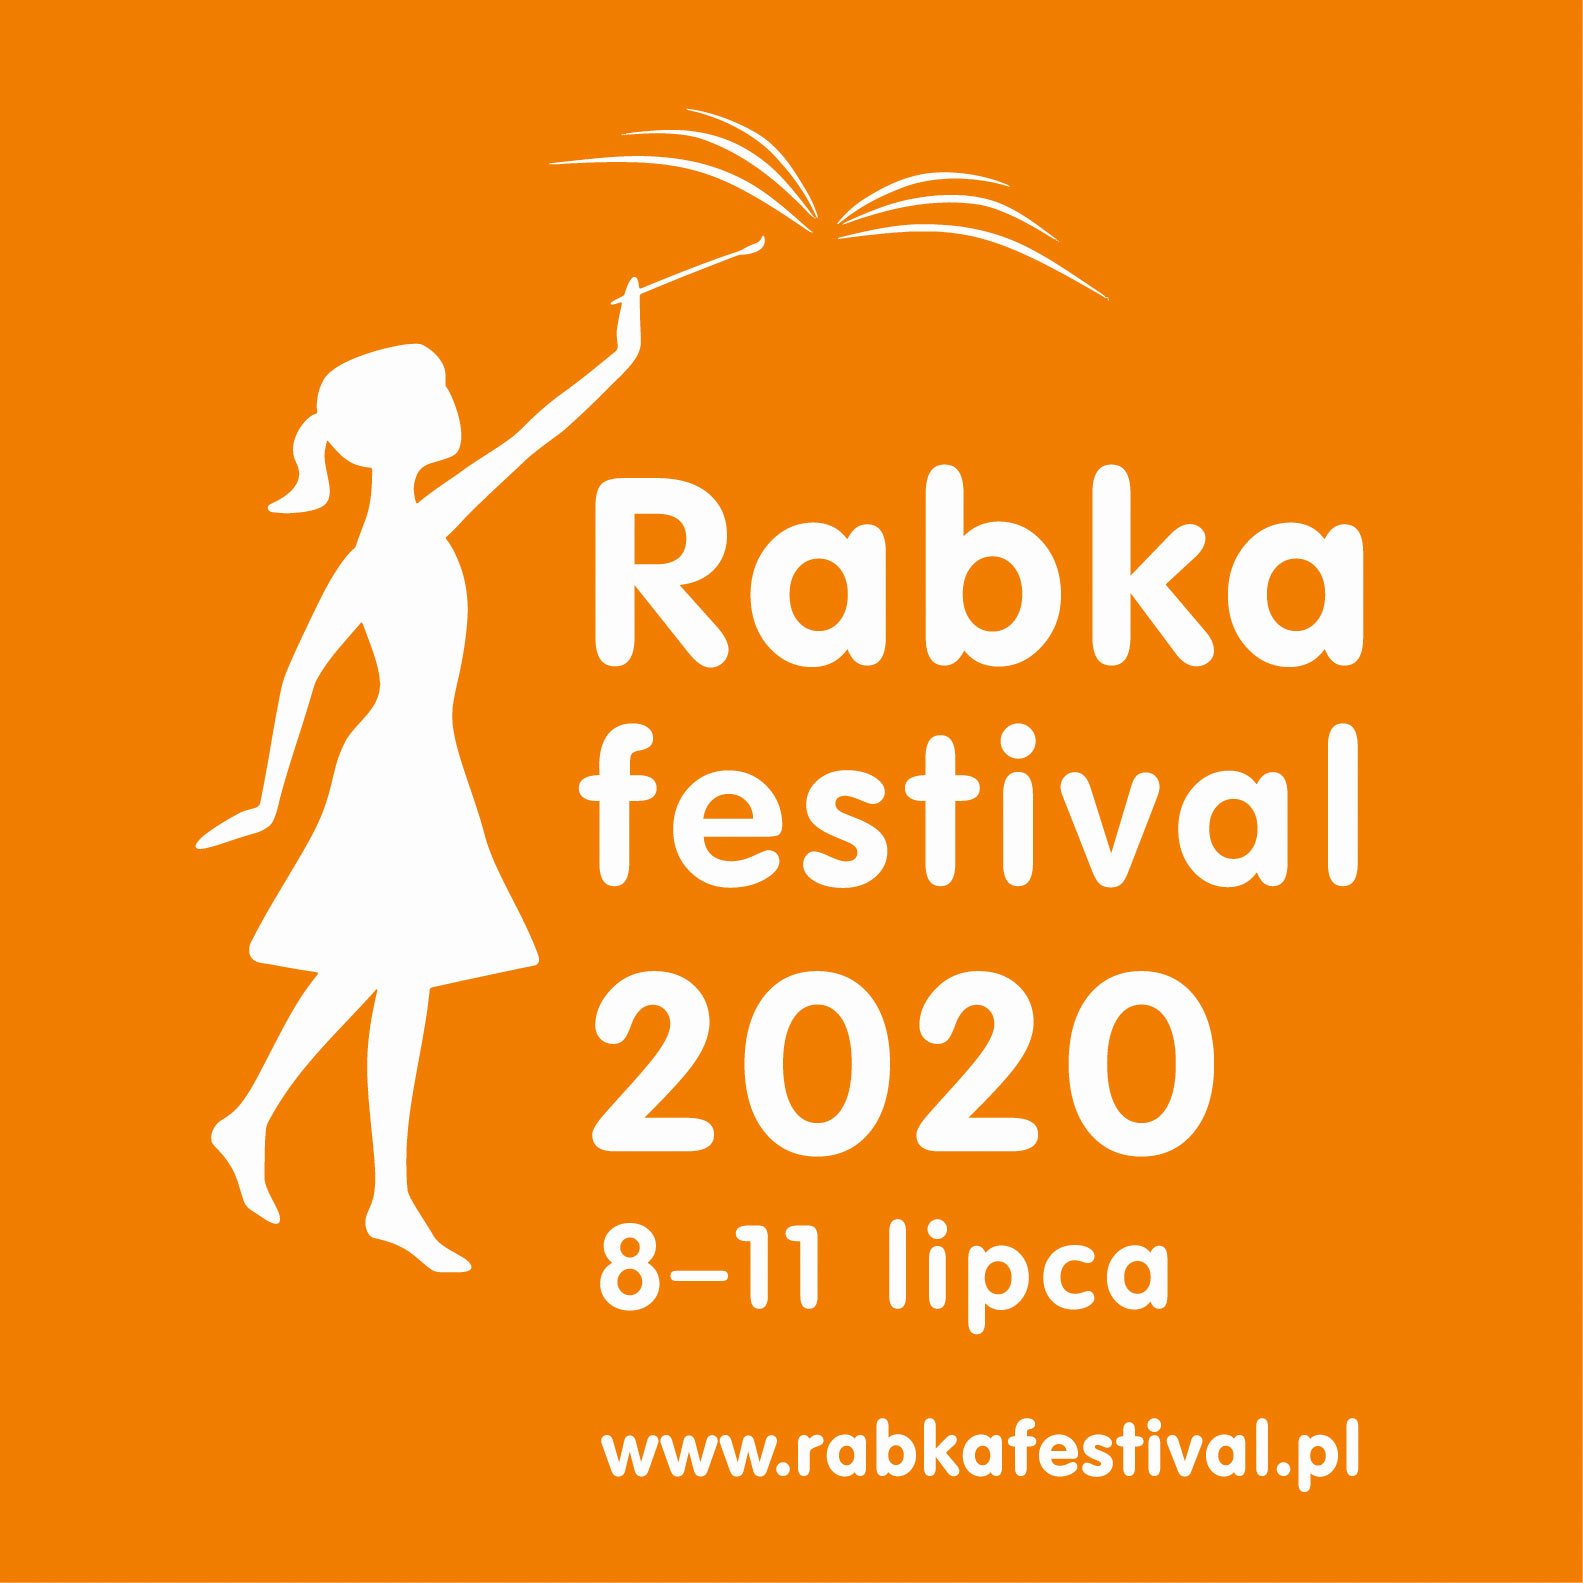 Rabka Festival 2020